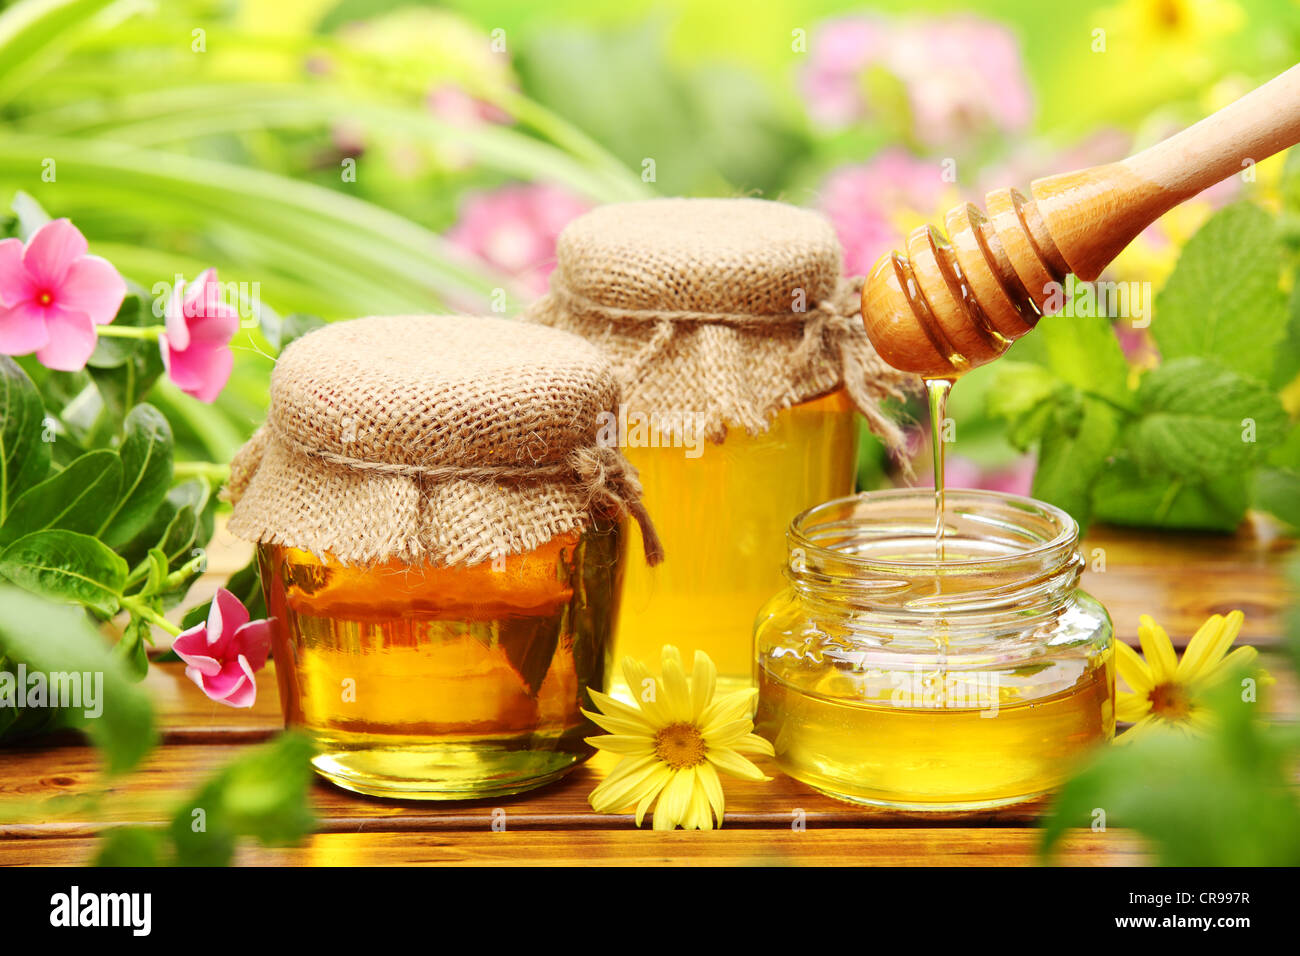 La Miel en tarros de vidrio con flores de fondo. Foto de stock